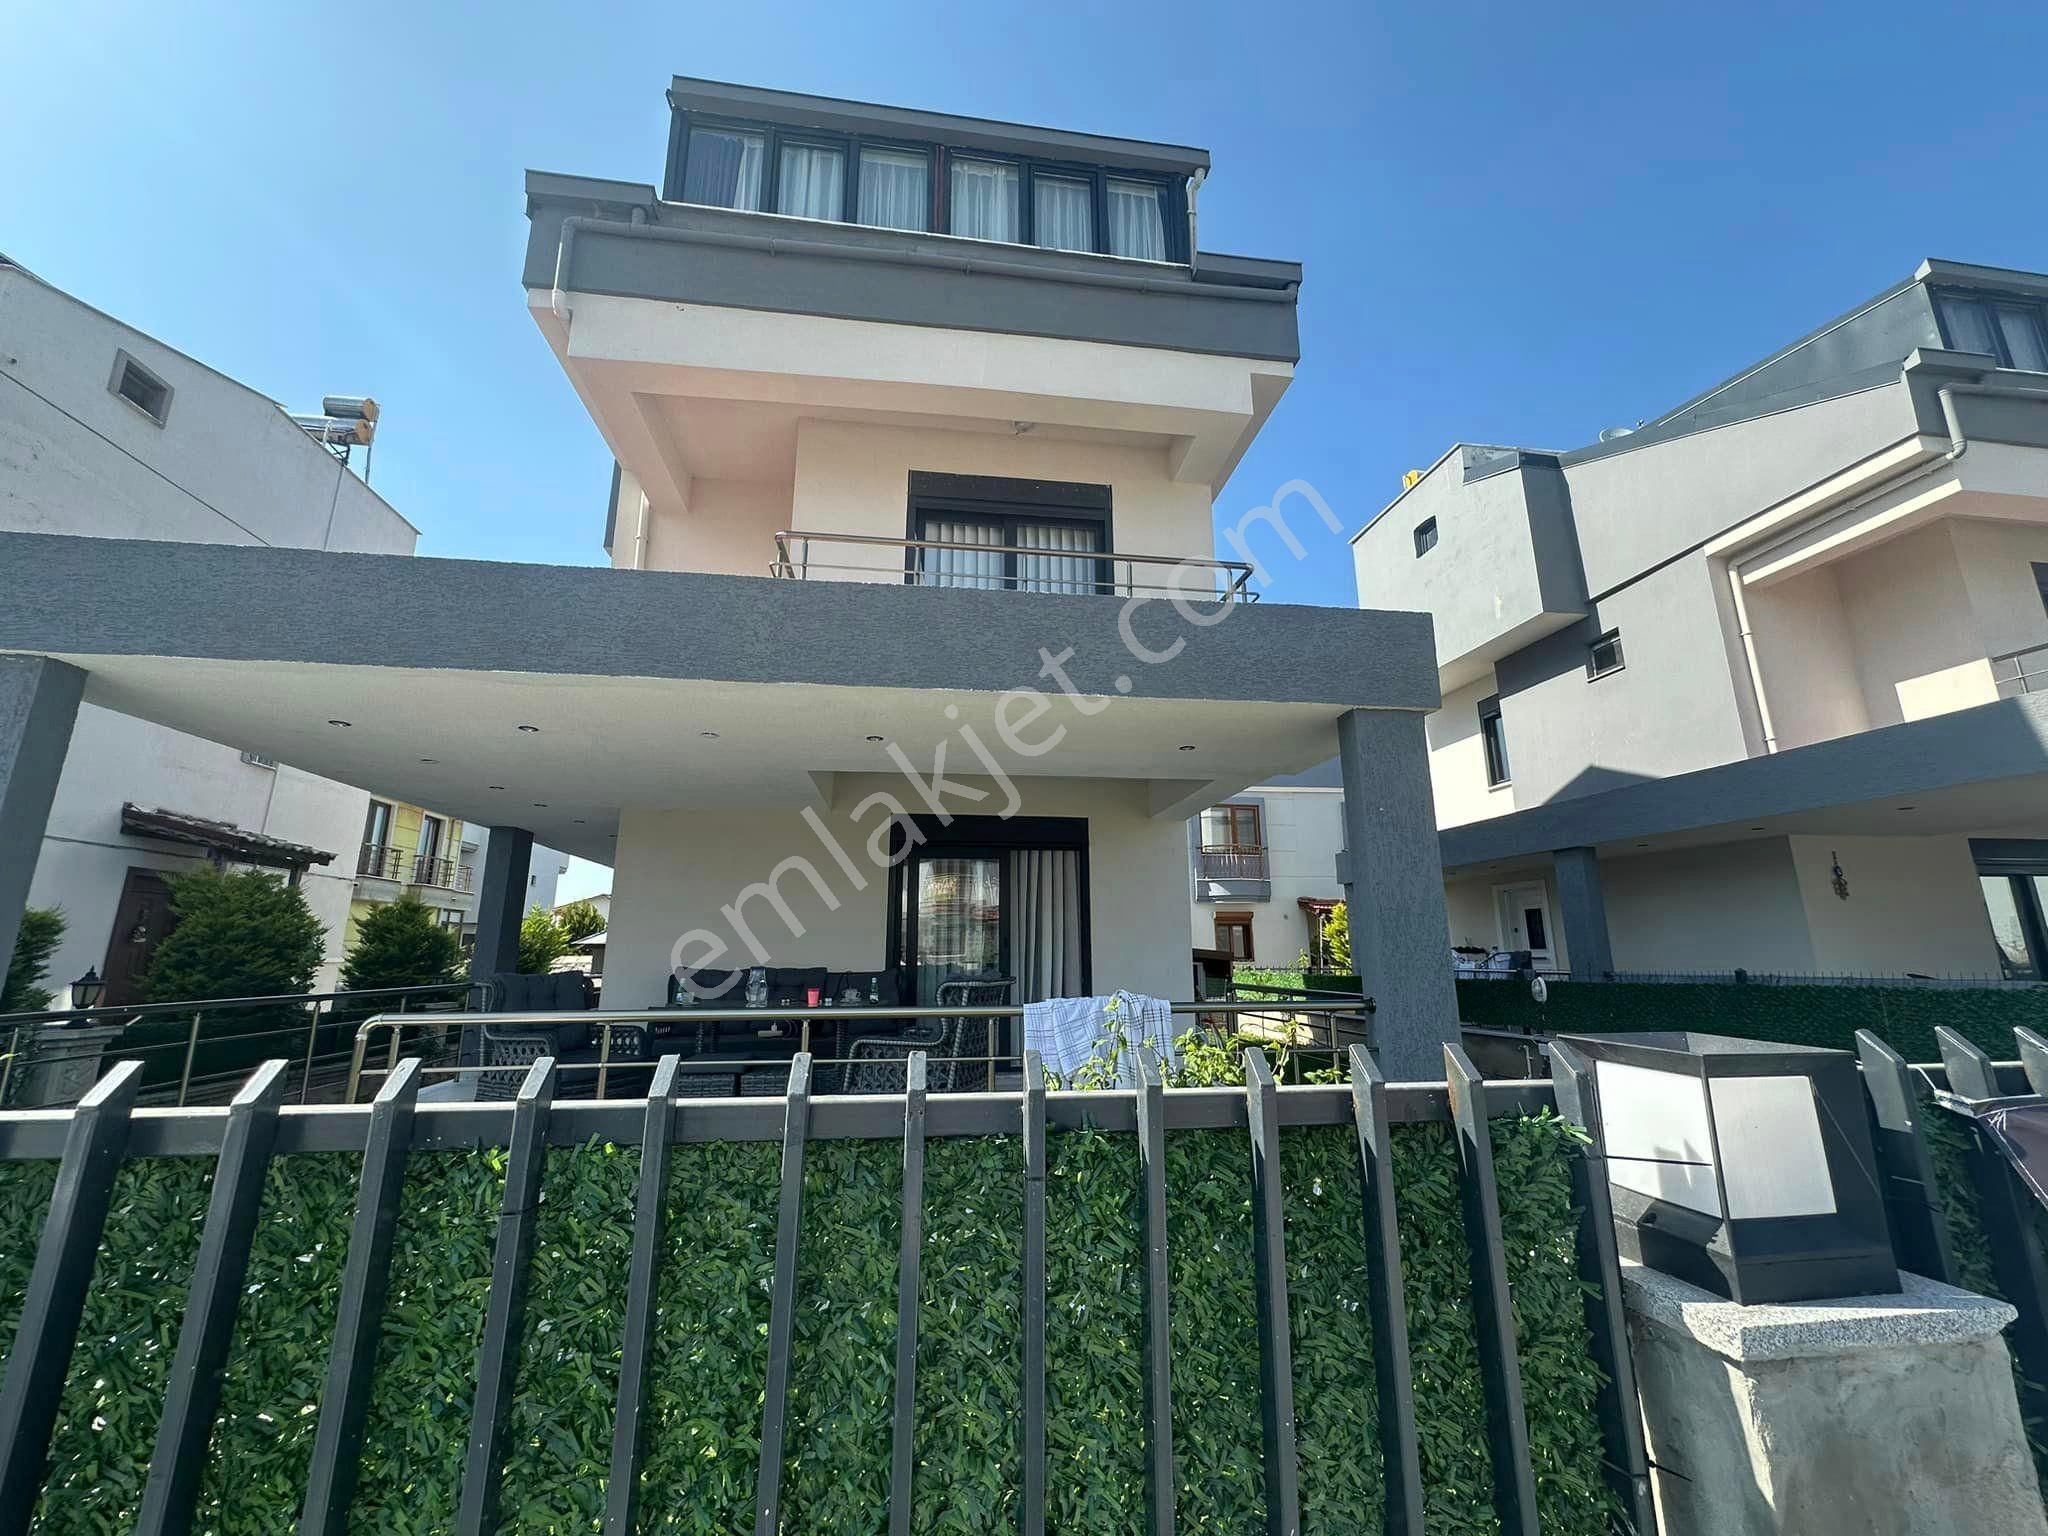 Dikili Cumhuriyet Satılık Villa  OKTAY GAYRİMENKUL'DEN DİKİLİ ÇETİN EMEÇ CADDESİNDE SATILIK VİLLA